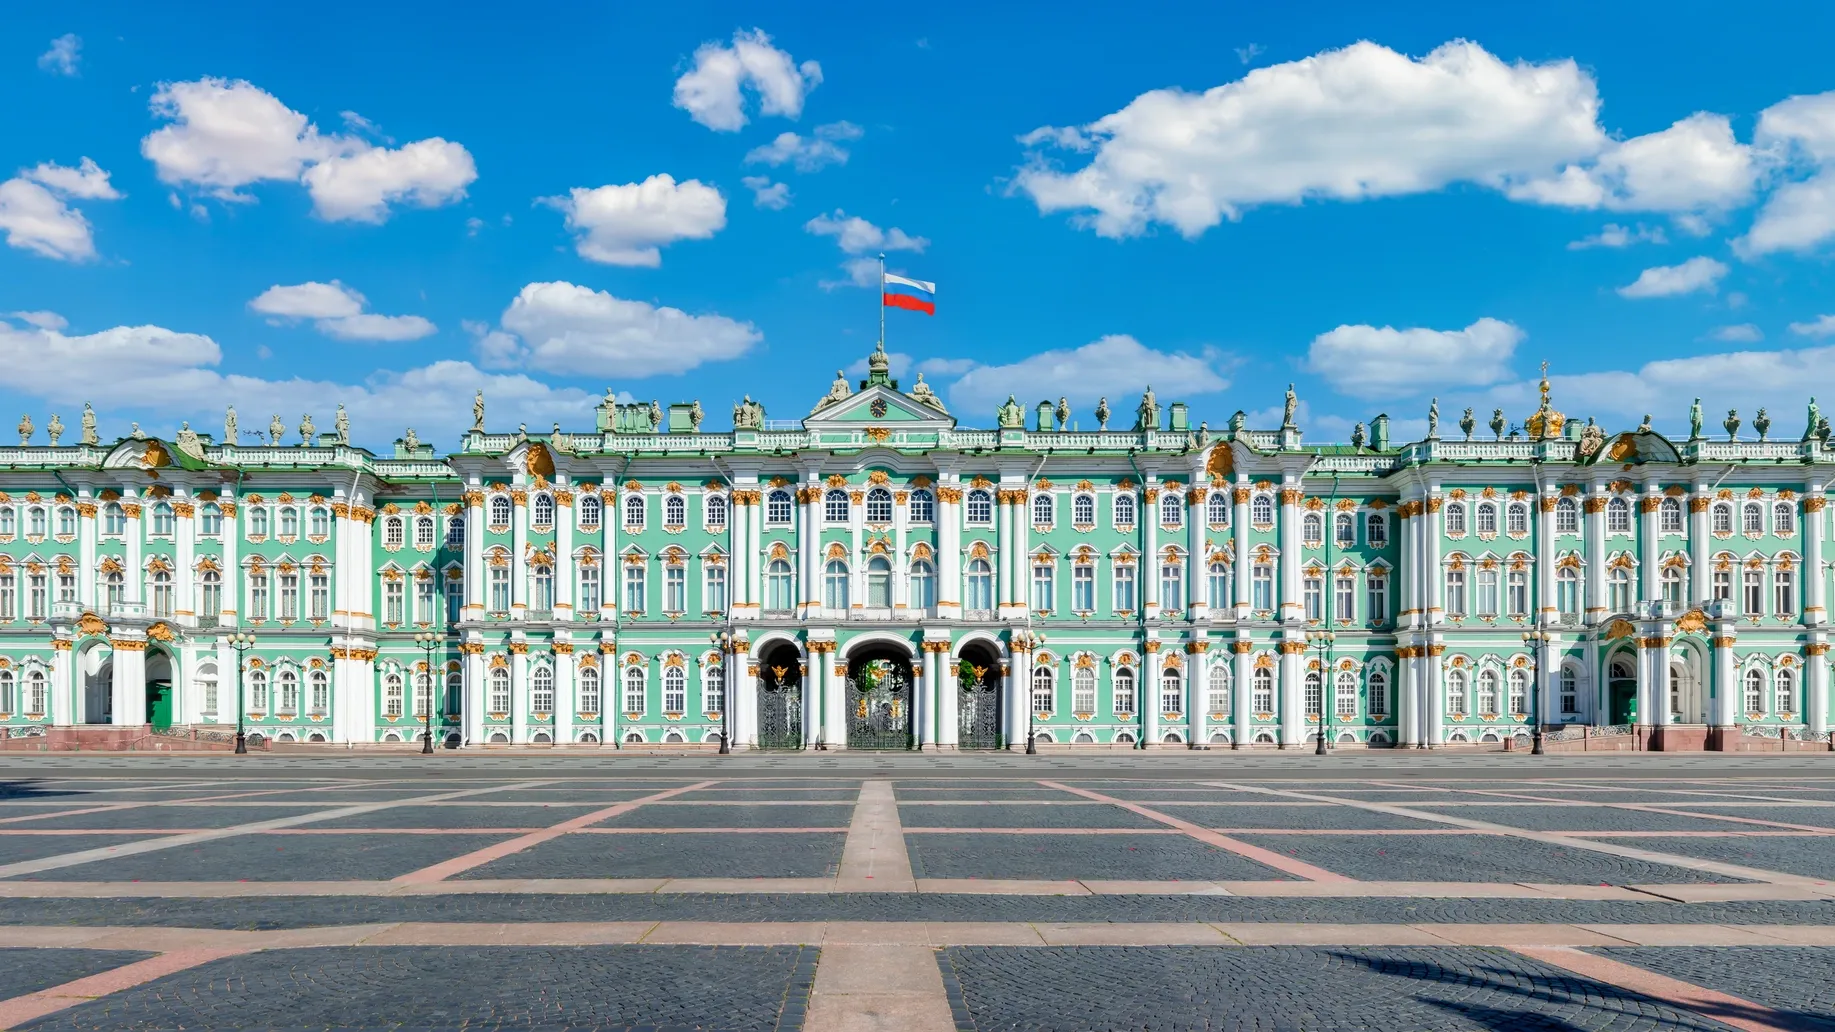 Зимний дворец в Санкт-Петербурге. Фото: Mistervlad / Shutterstock / Fotodom